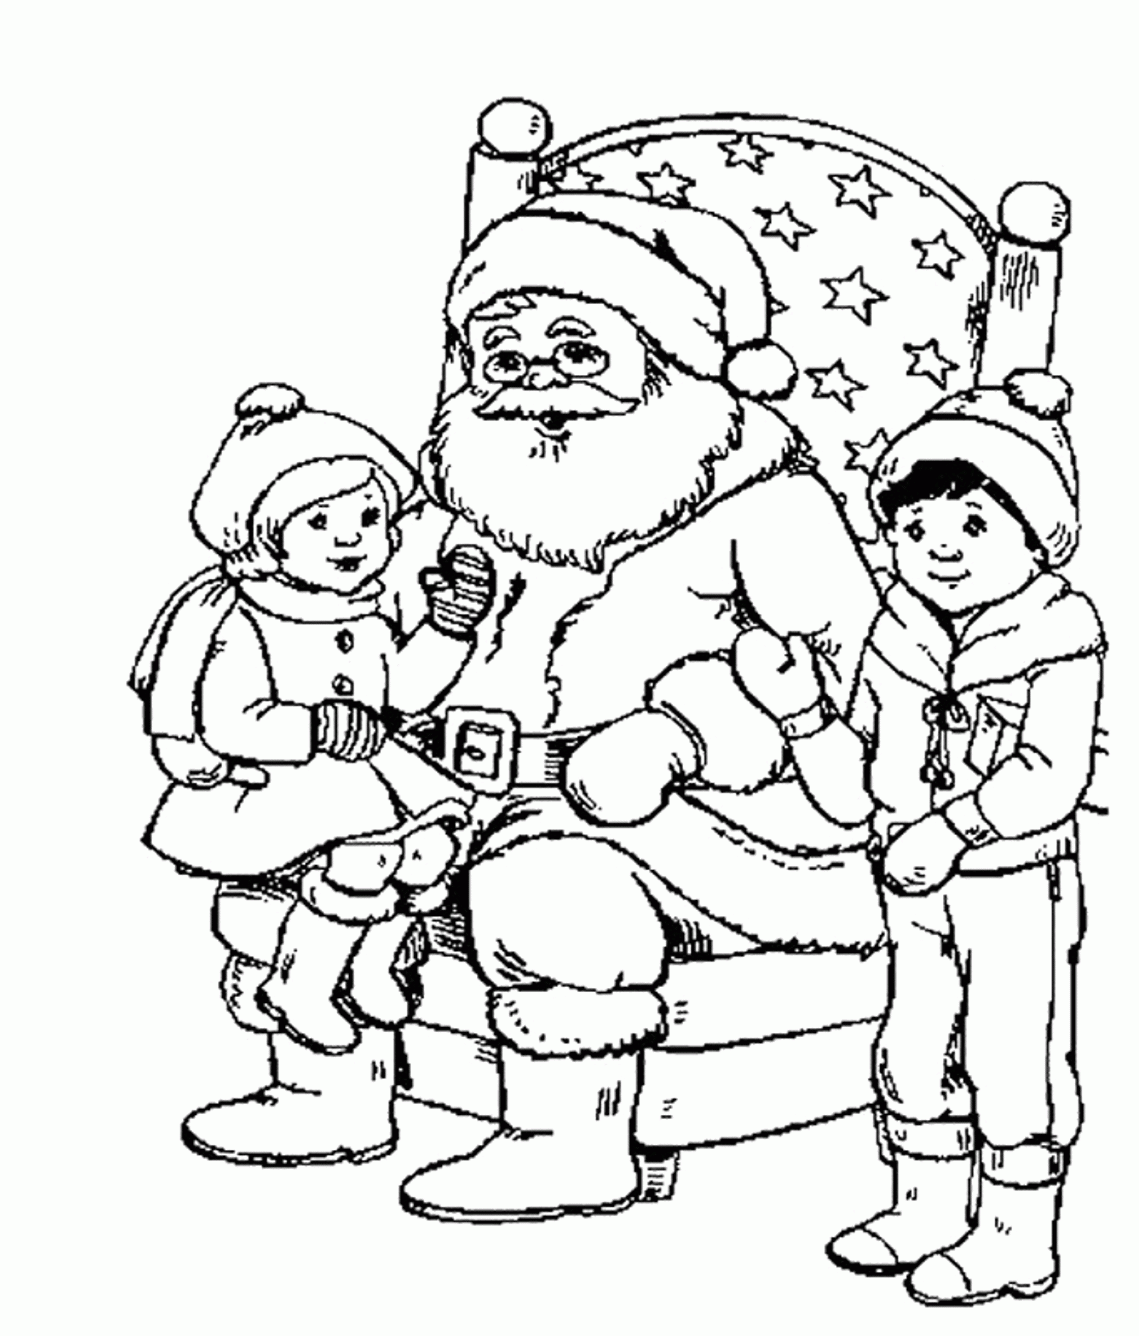 Christmas Coloring Pages For Kids Santa Printable   Christmas ...